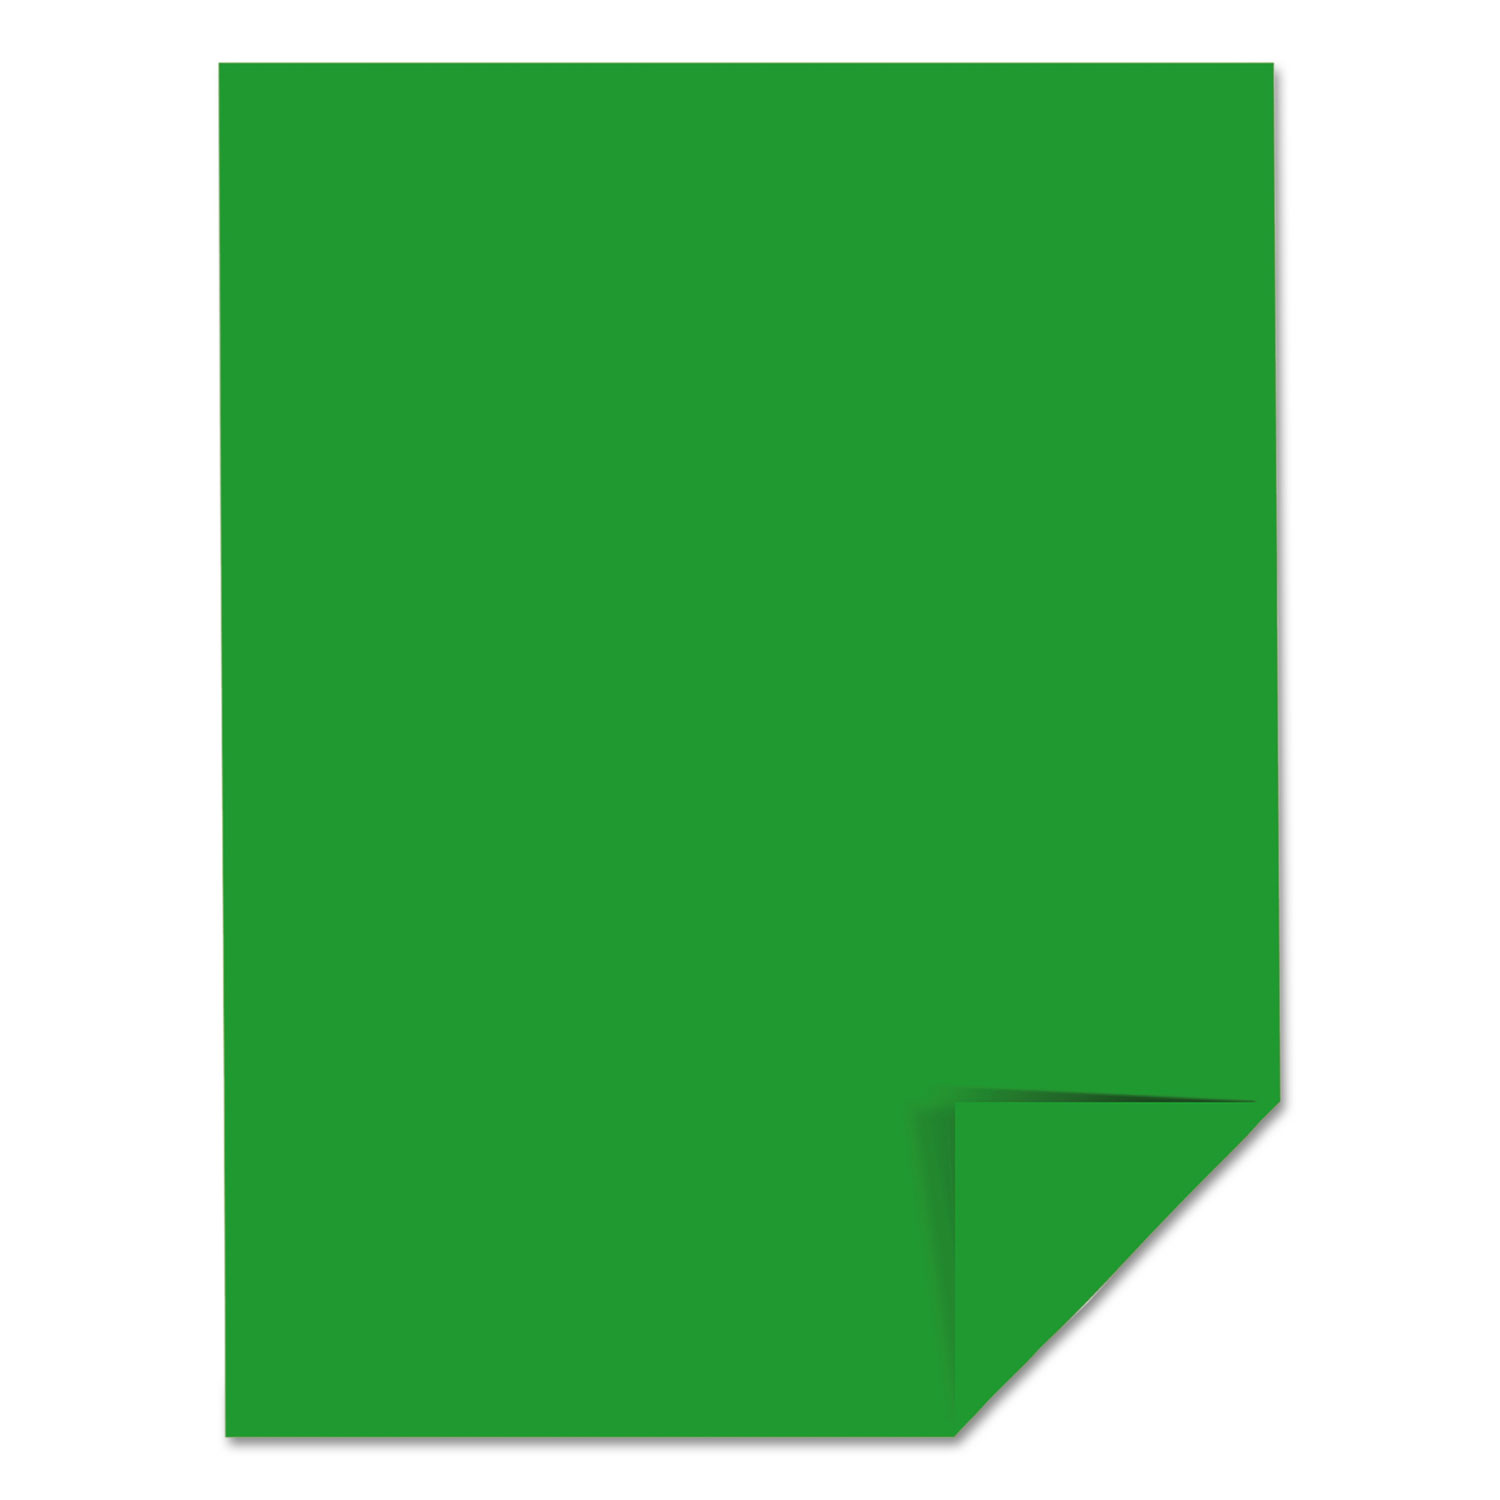 Martian Green™, 8.5” x 11”, 24 lb/89 gsm, 500 Sheets, Color Paper